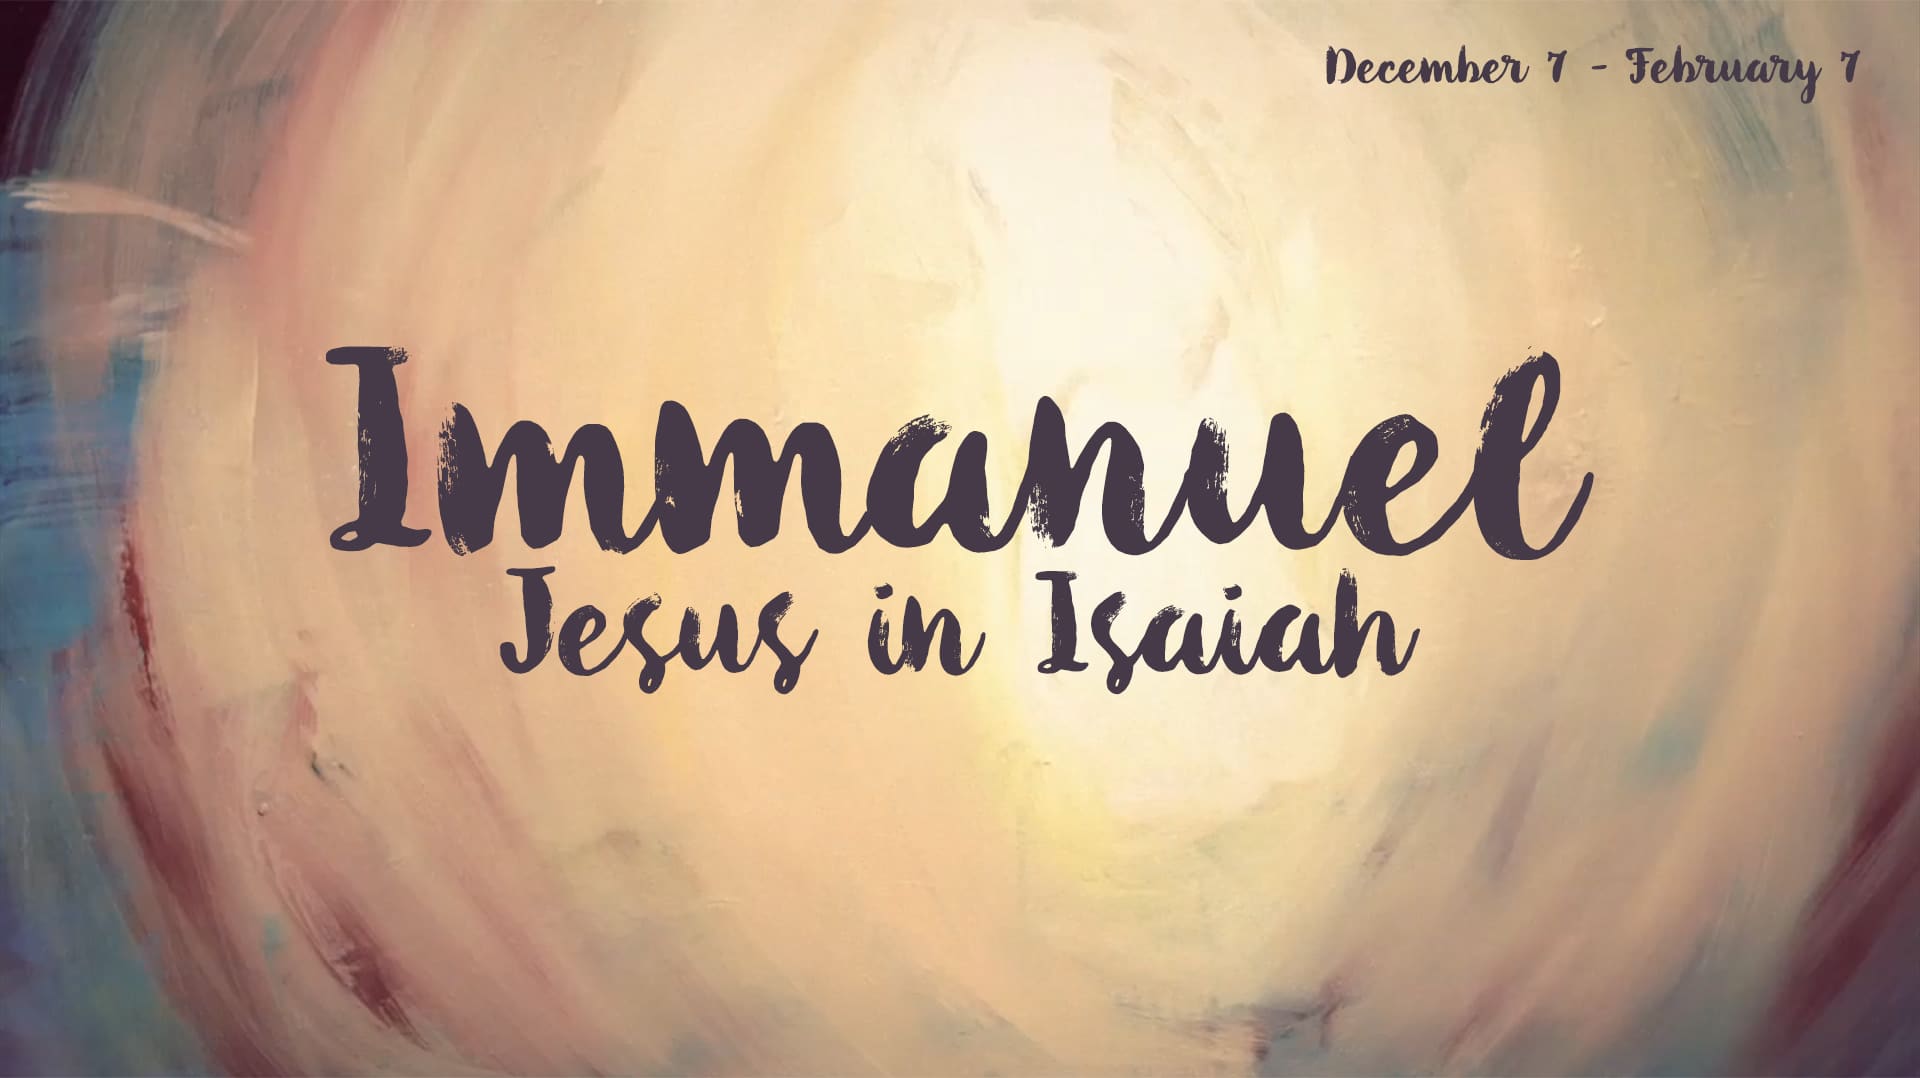 Immanuel, emmanuel, sermons on Isaiah, Jesus in Isaiah, church in Wilsonville, churches in Wilsonville